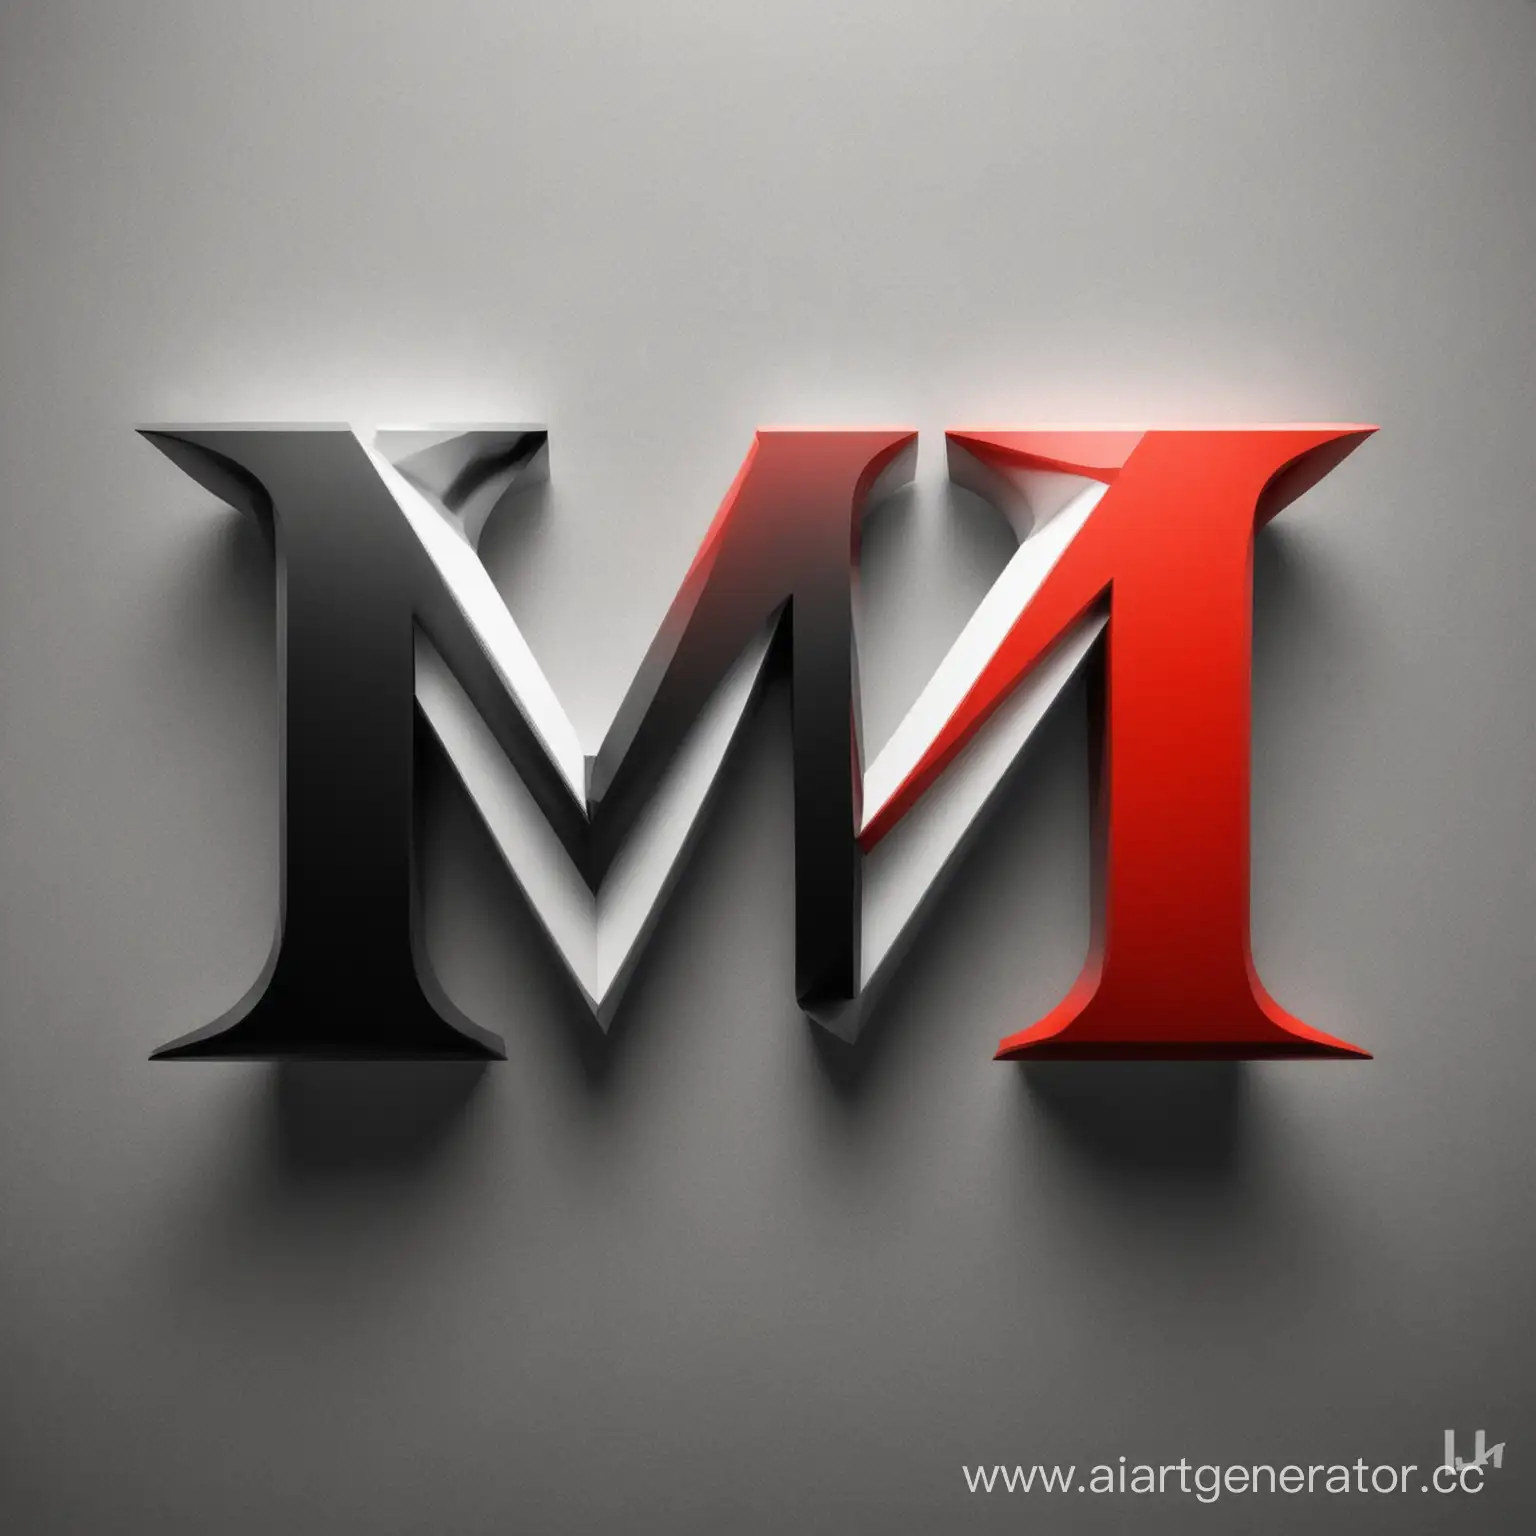 Создай логотип с буквами "М" и "Ш", красивый, используя цвета красный, белый и черный